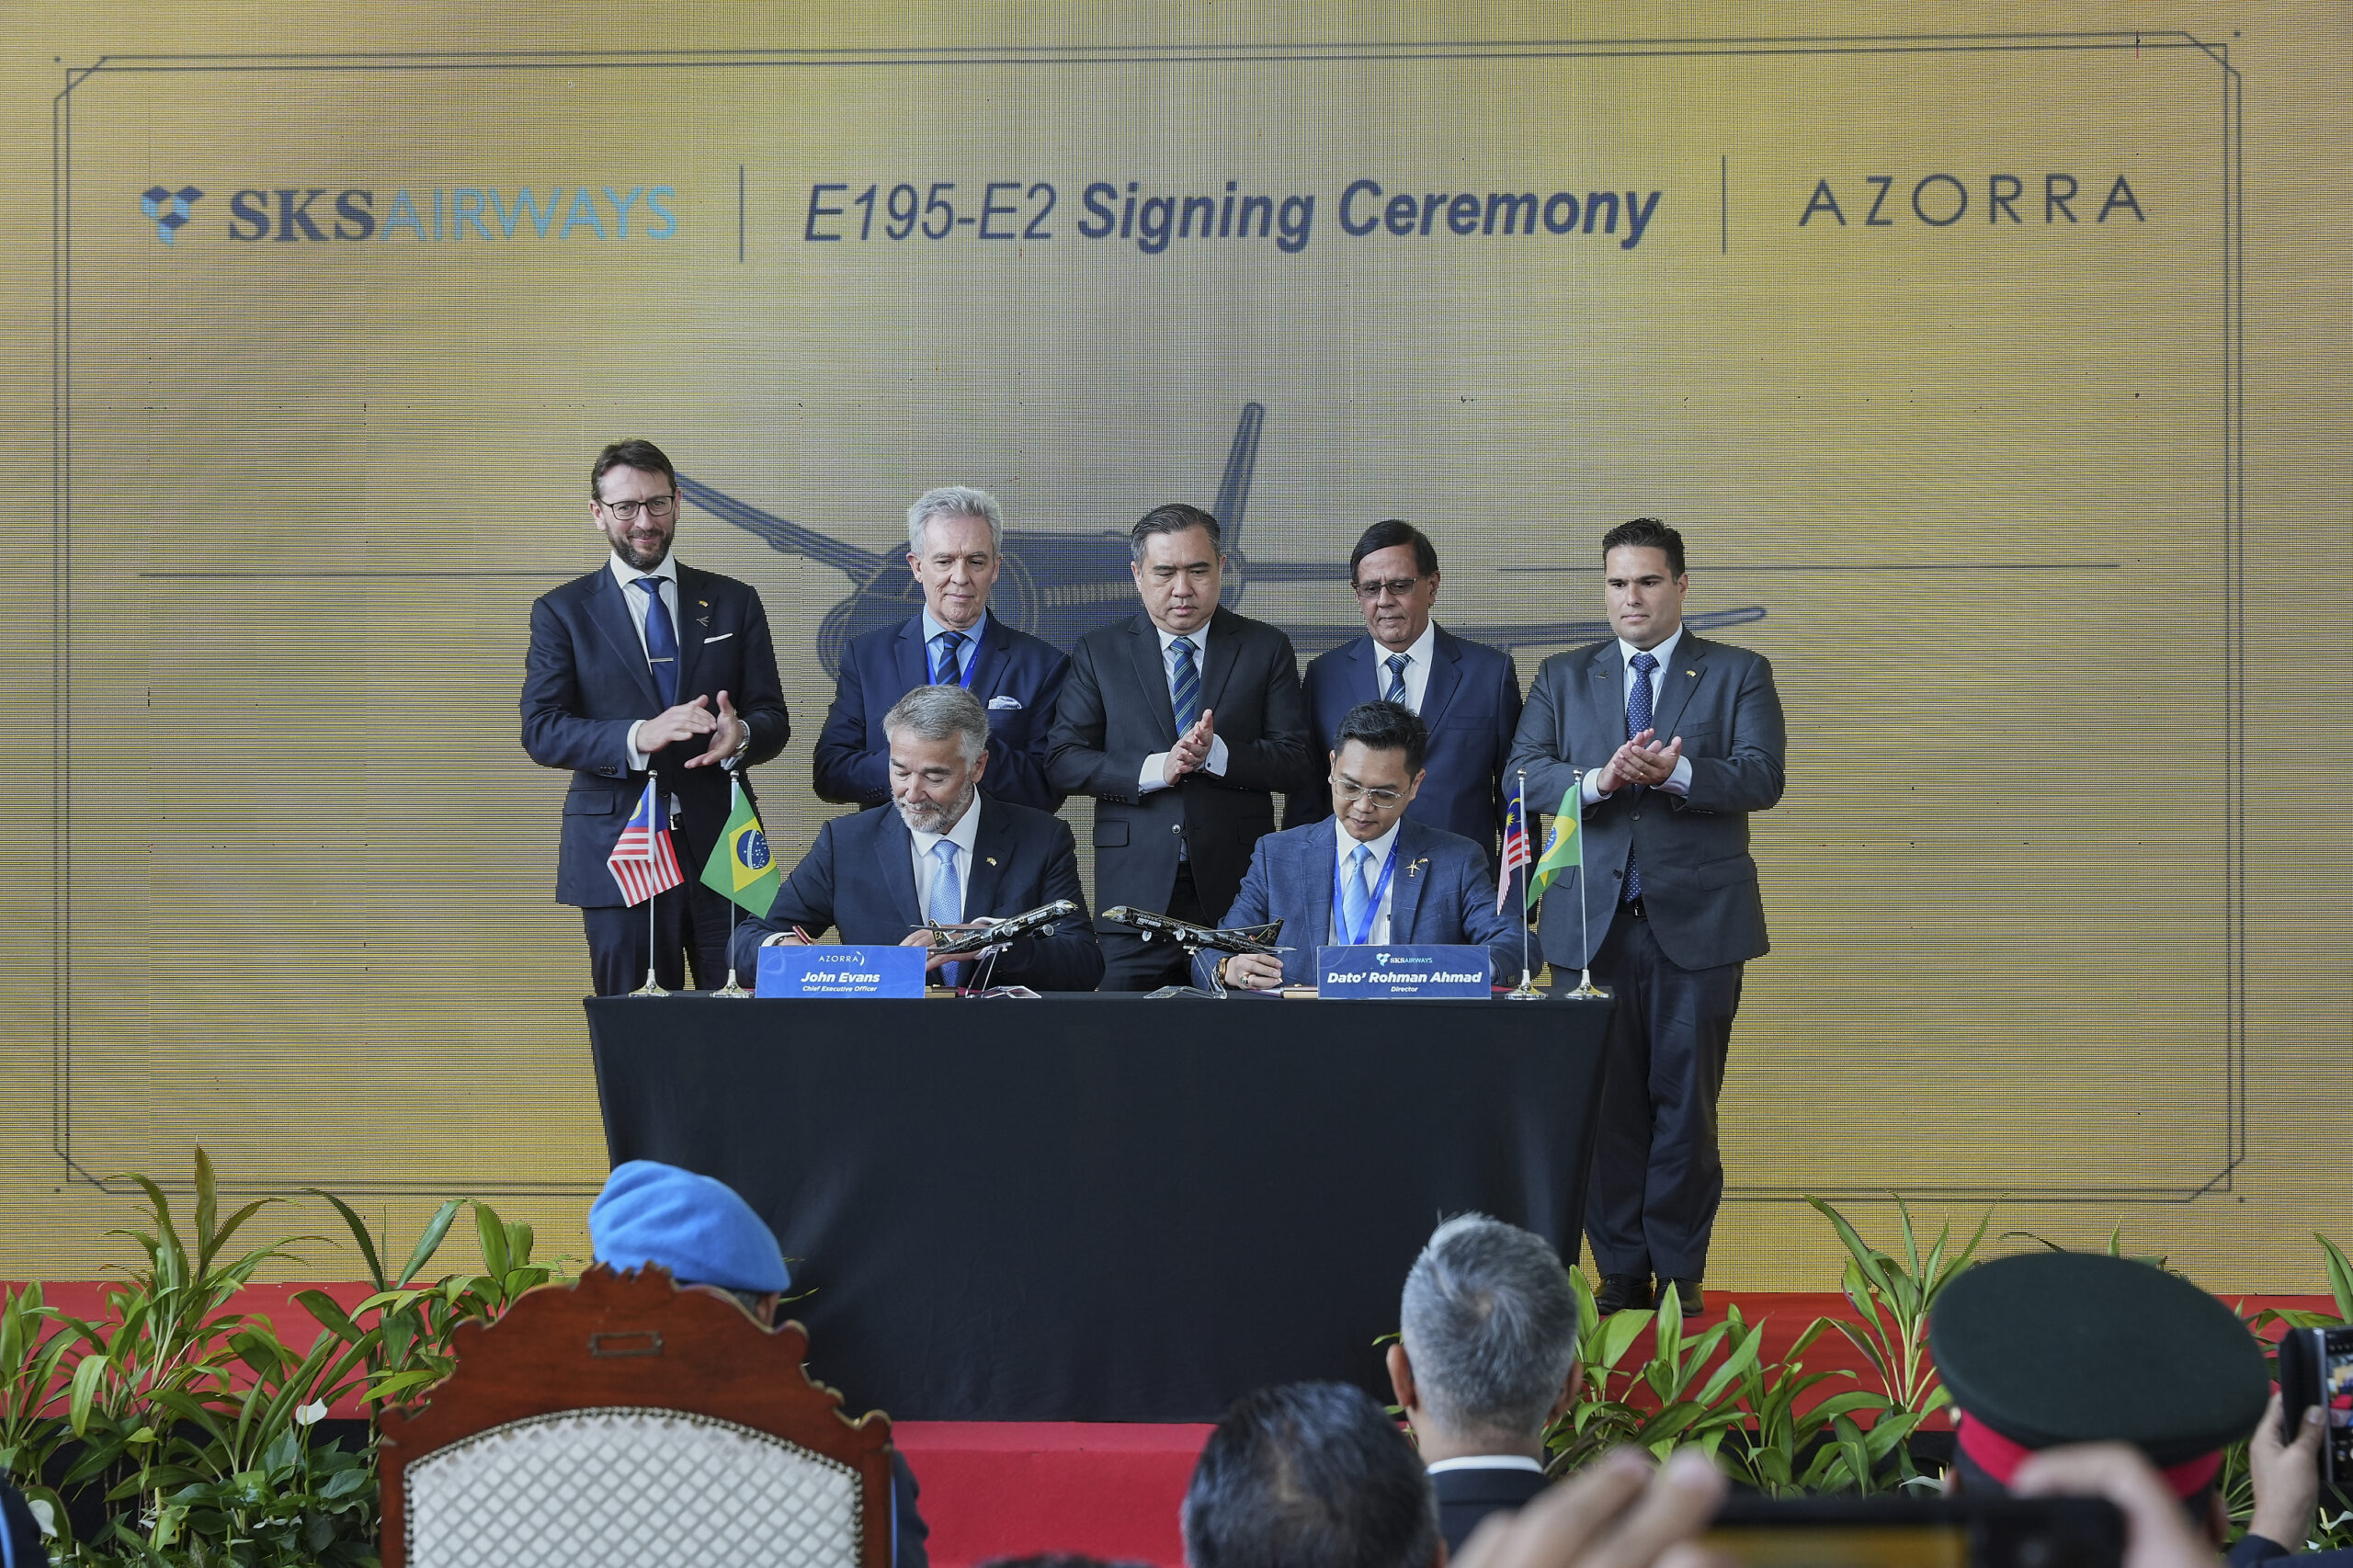 马来西亚 SKS 航空公司选择巴西航空工业公司的 E195-E2 来推动增长